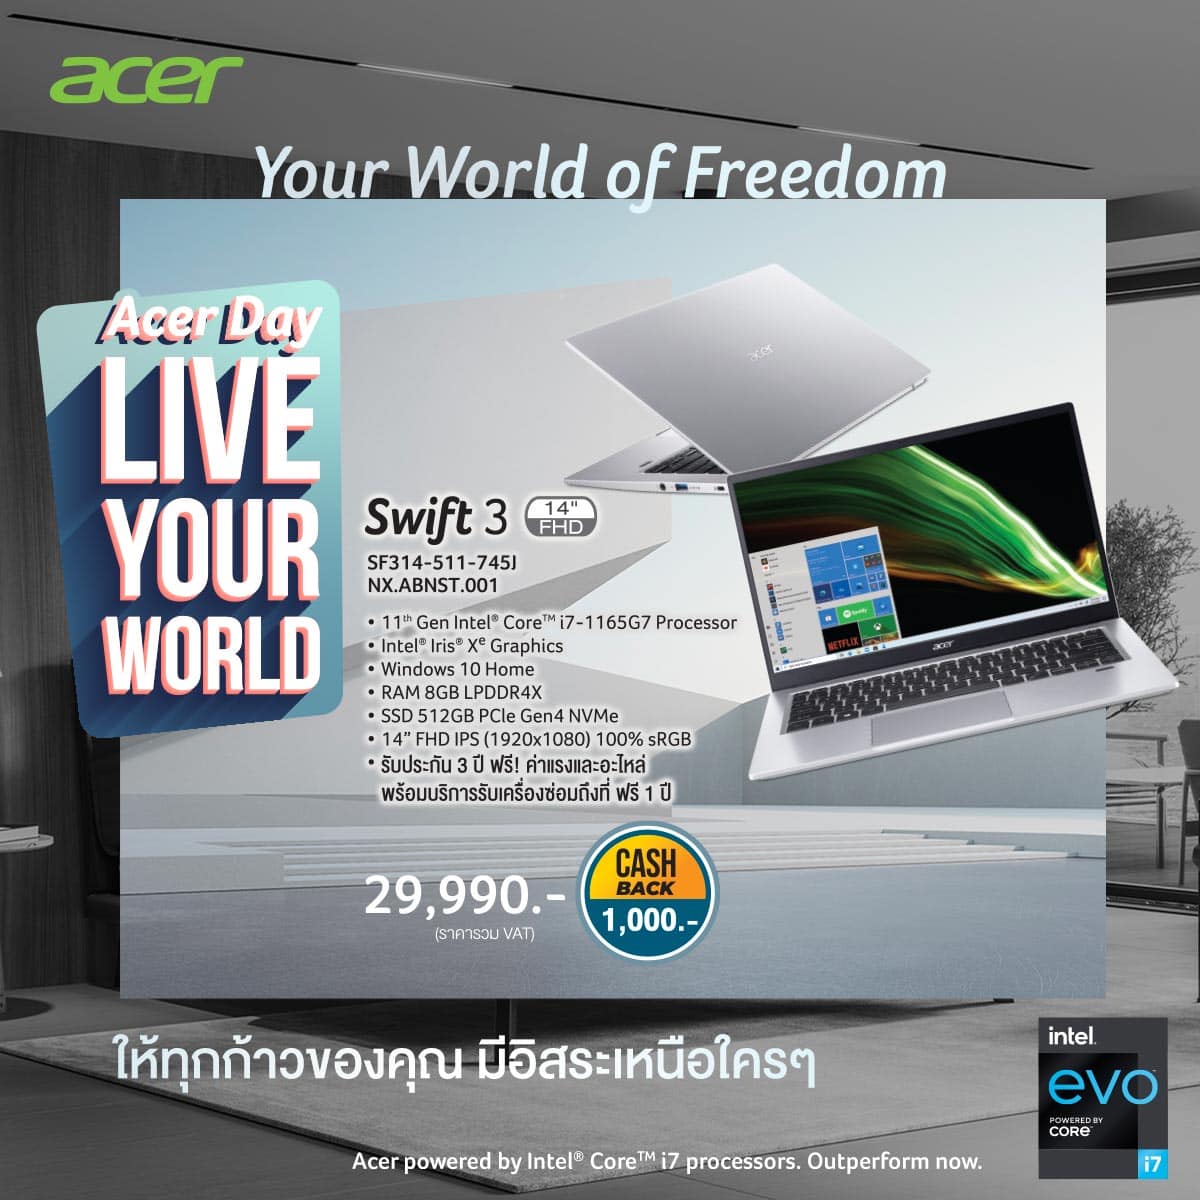 เอเซอร์จัดงาน Acer Day ภายใต้ธีม ‘Live Your World’ เวอร์ชวลแคมเปญประจำปีระดับภูมิภาคเอเซียแปซิฟิก พบผลิตภัณฑ์ โปรโมชั่น และแคชแบคสุดคุ้ม 5